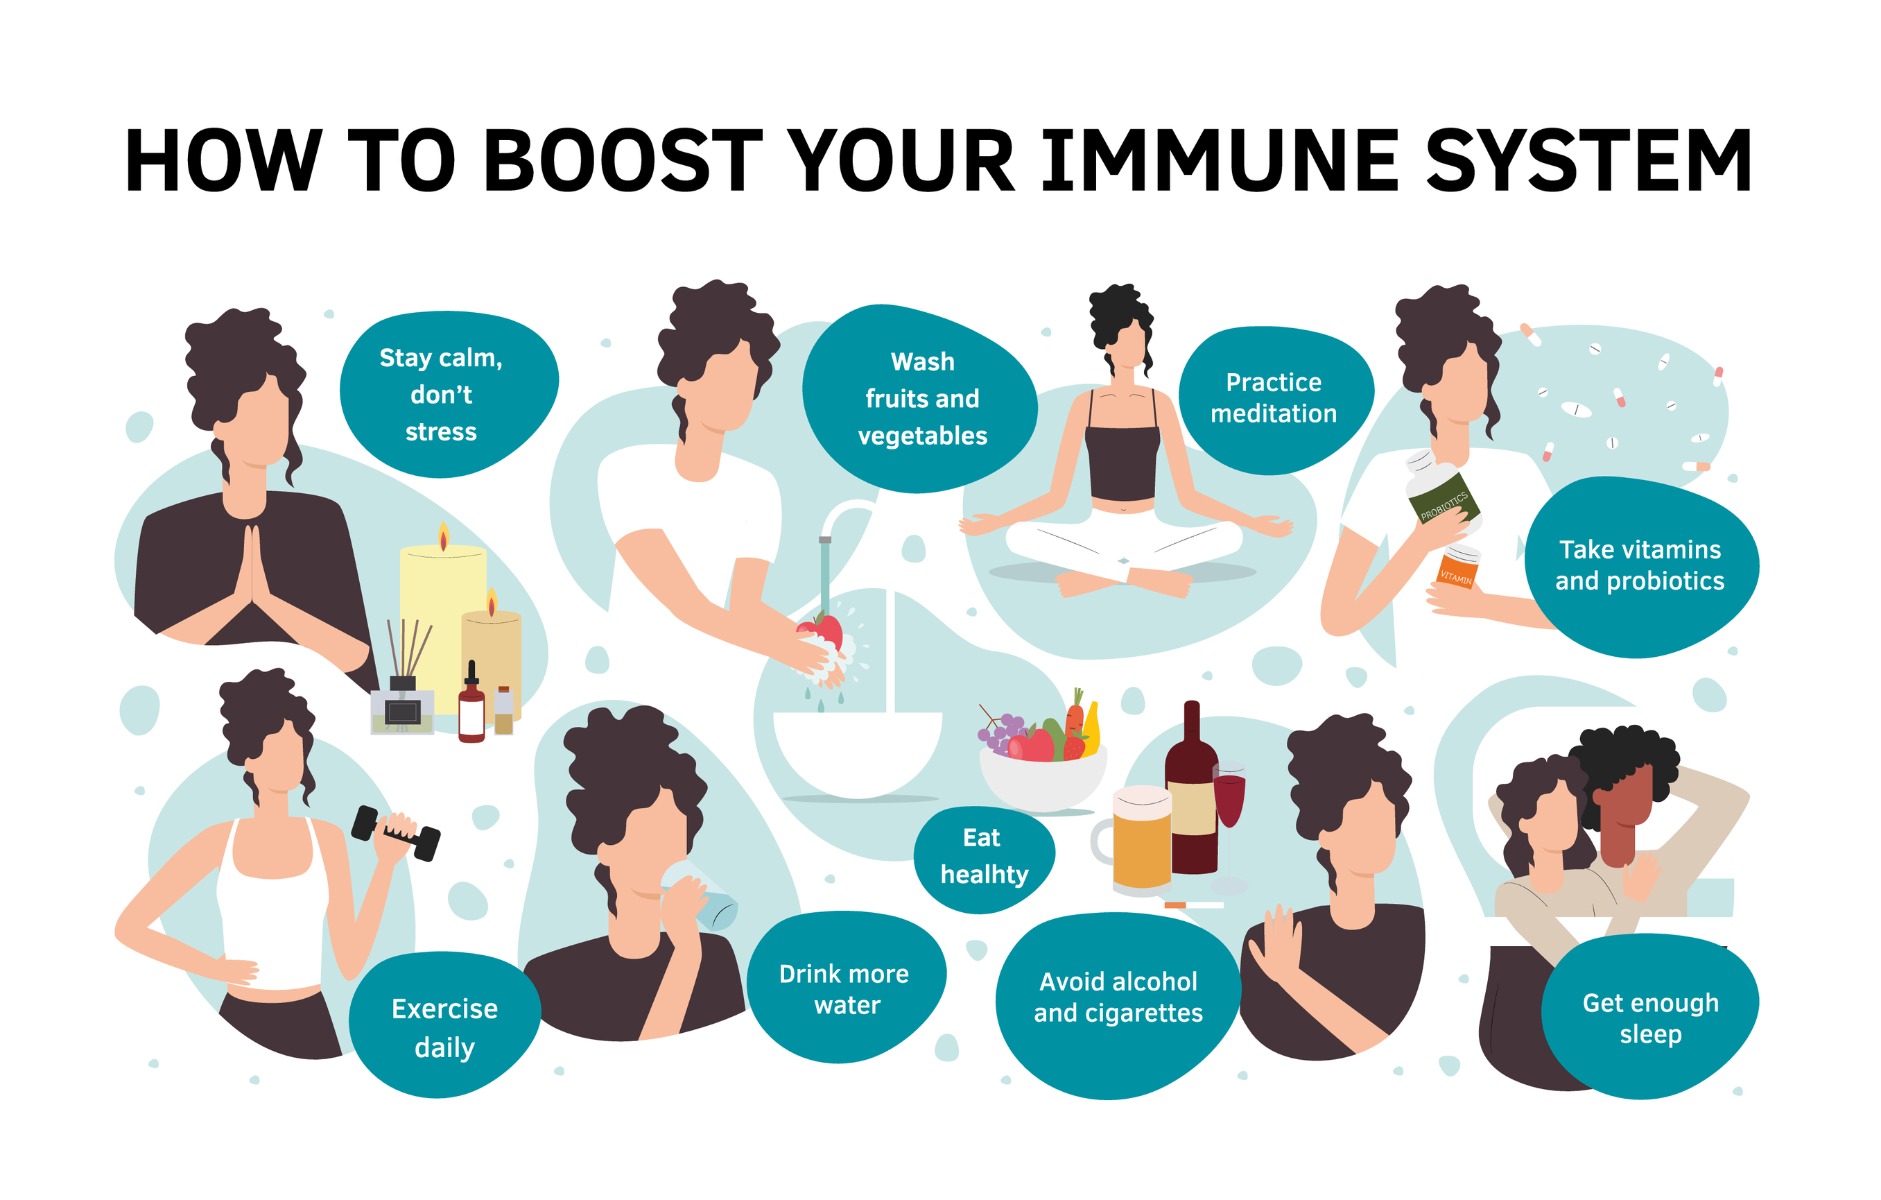 Strengthening immune response